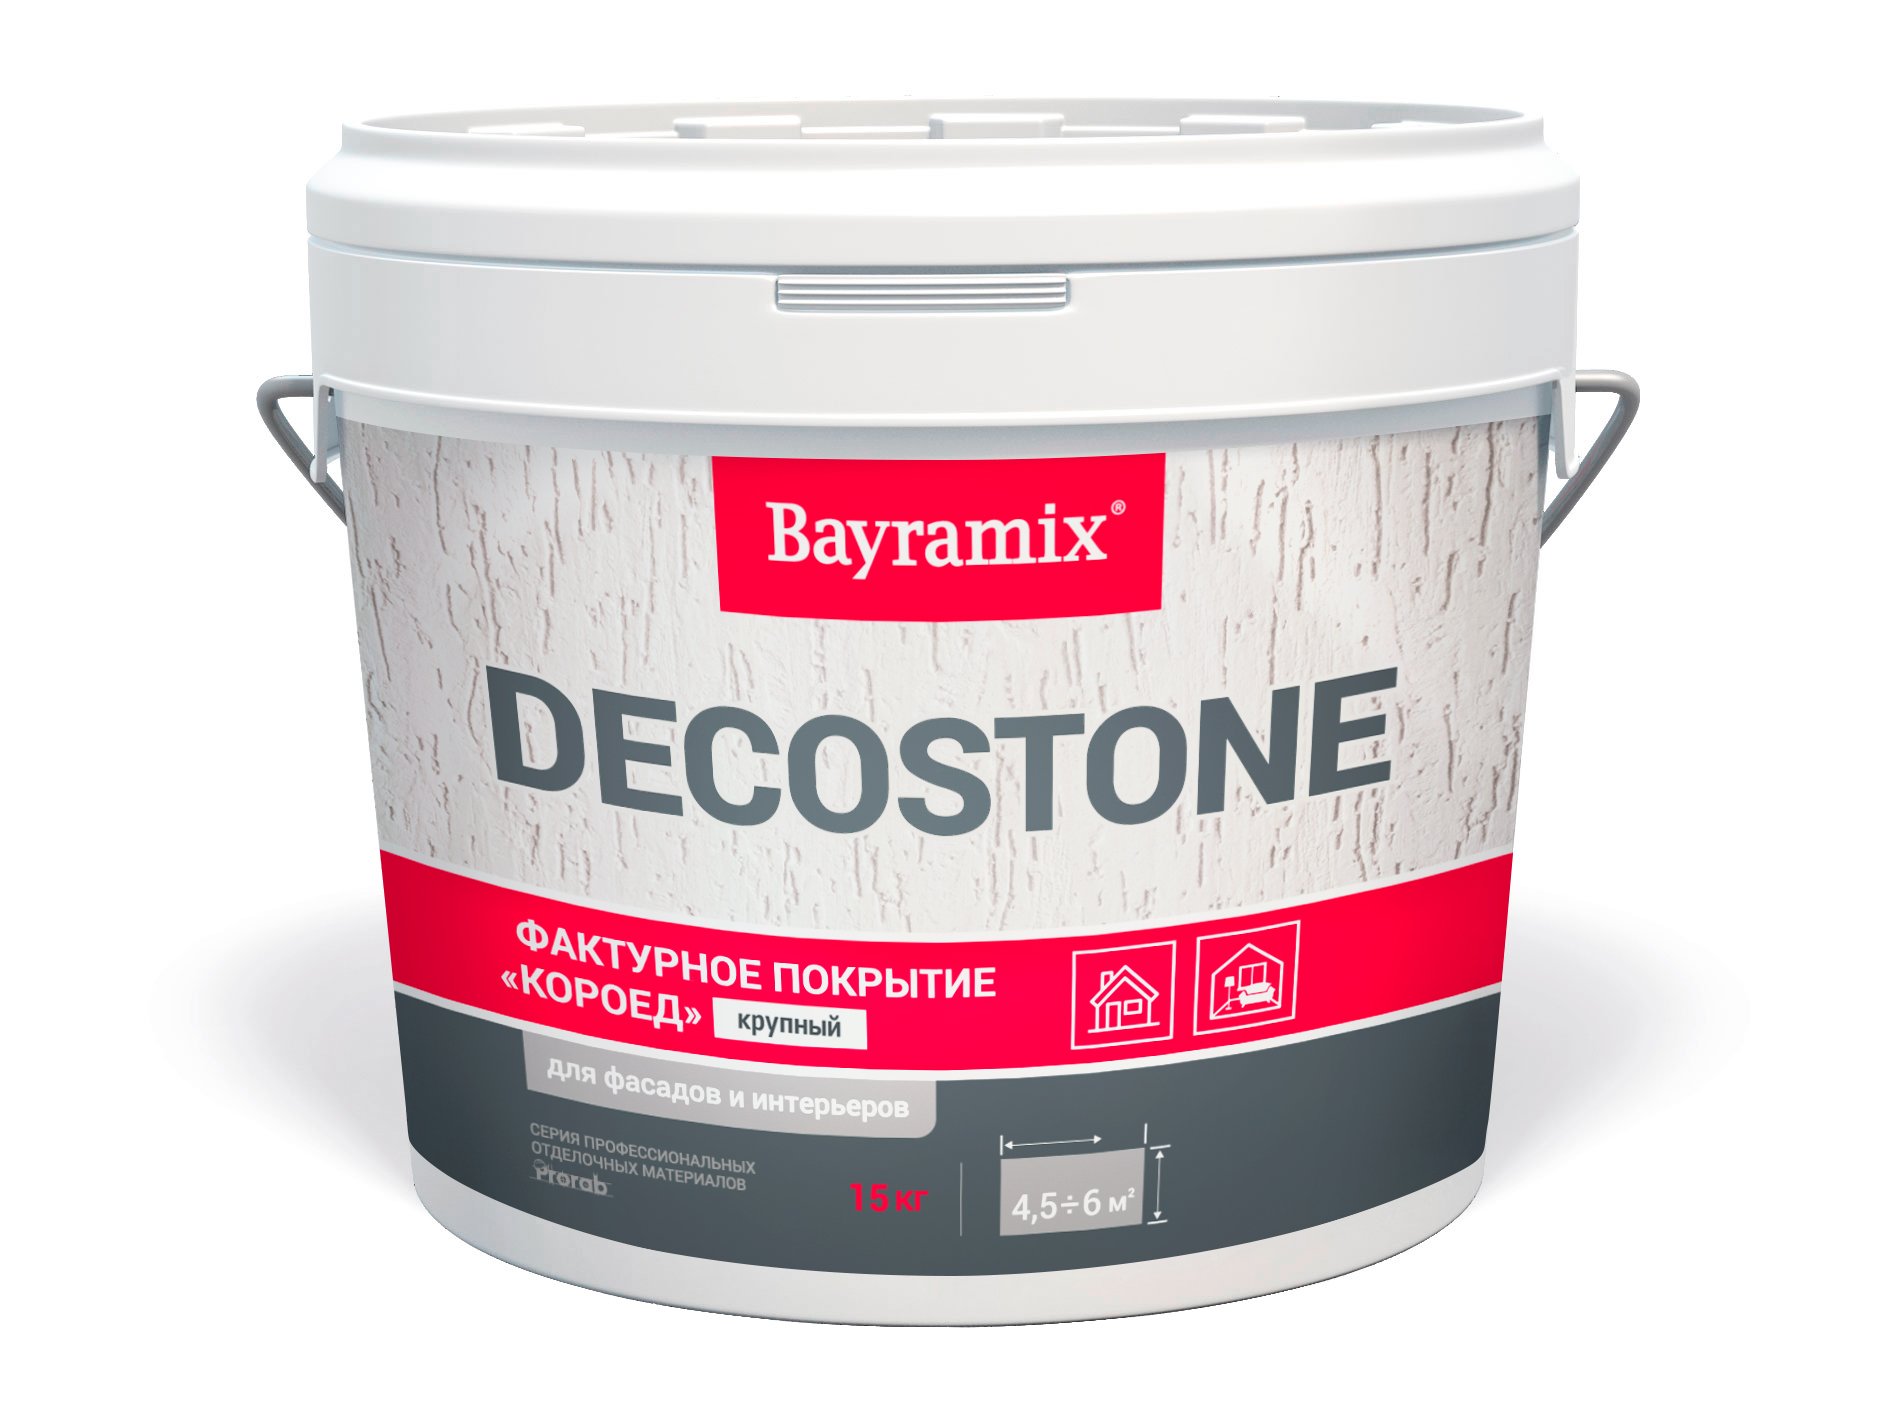 Фасадная штукатурка короед Bayramix Decostone (крупная), 15 кг фасадная цементная штукатурка старатели